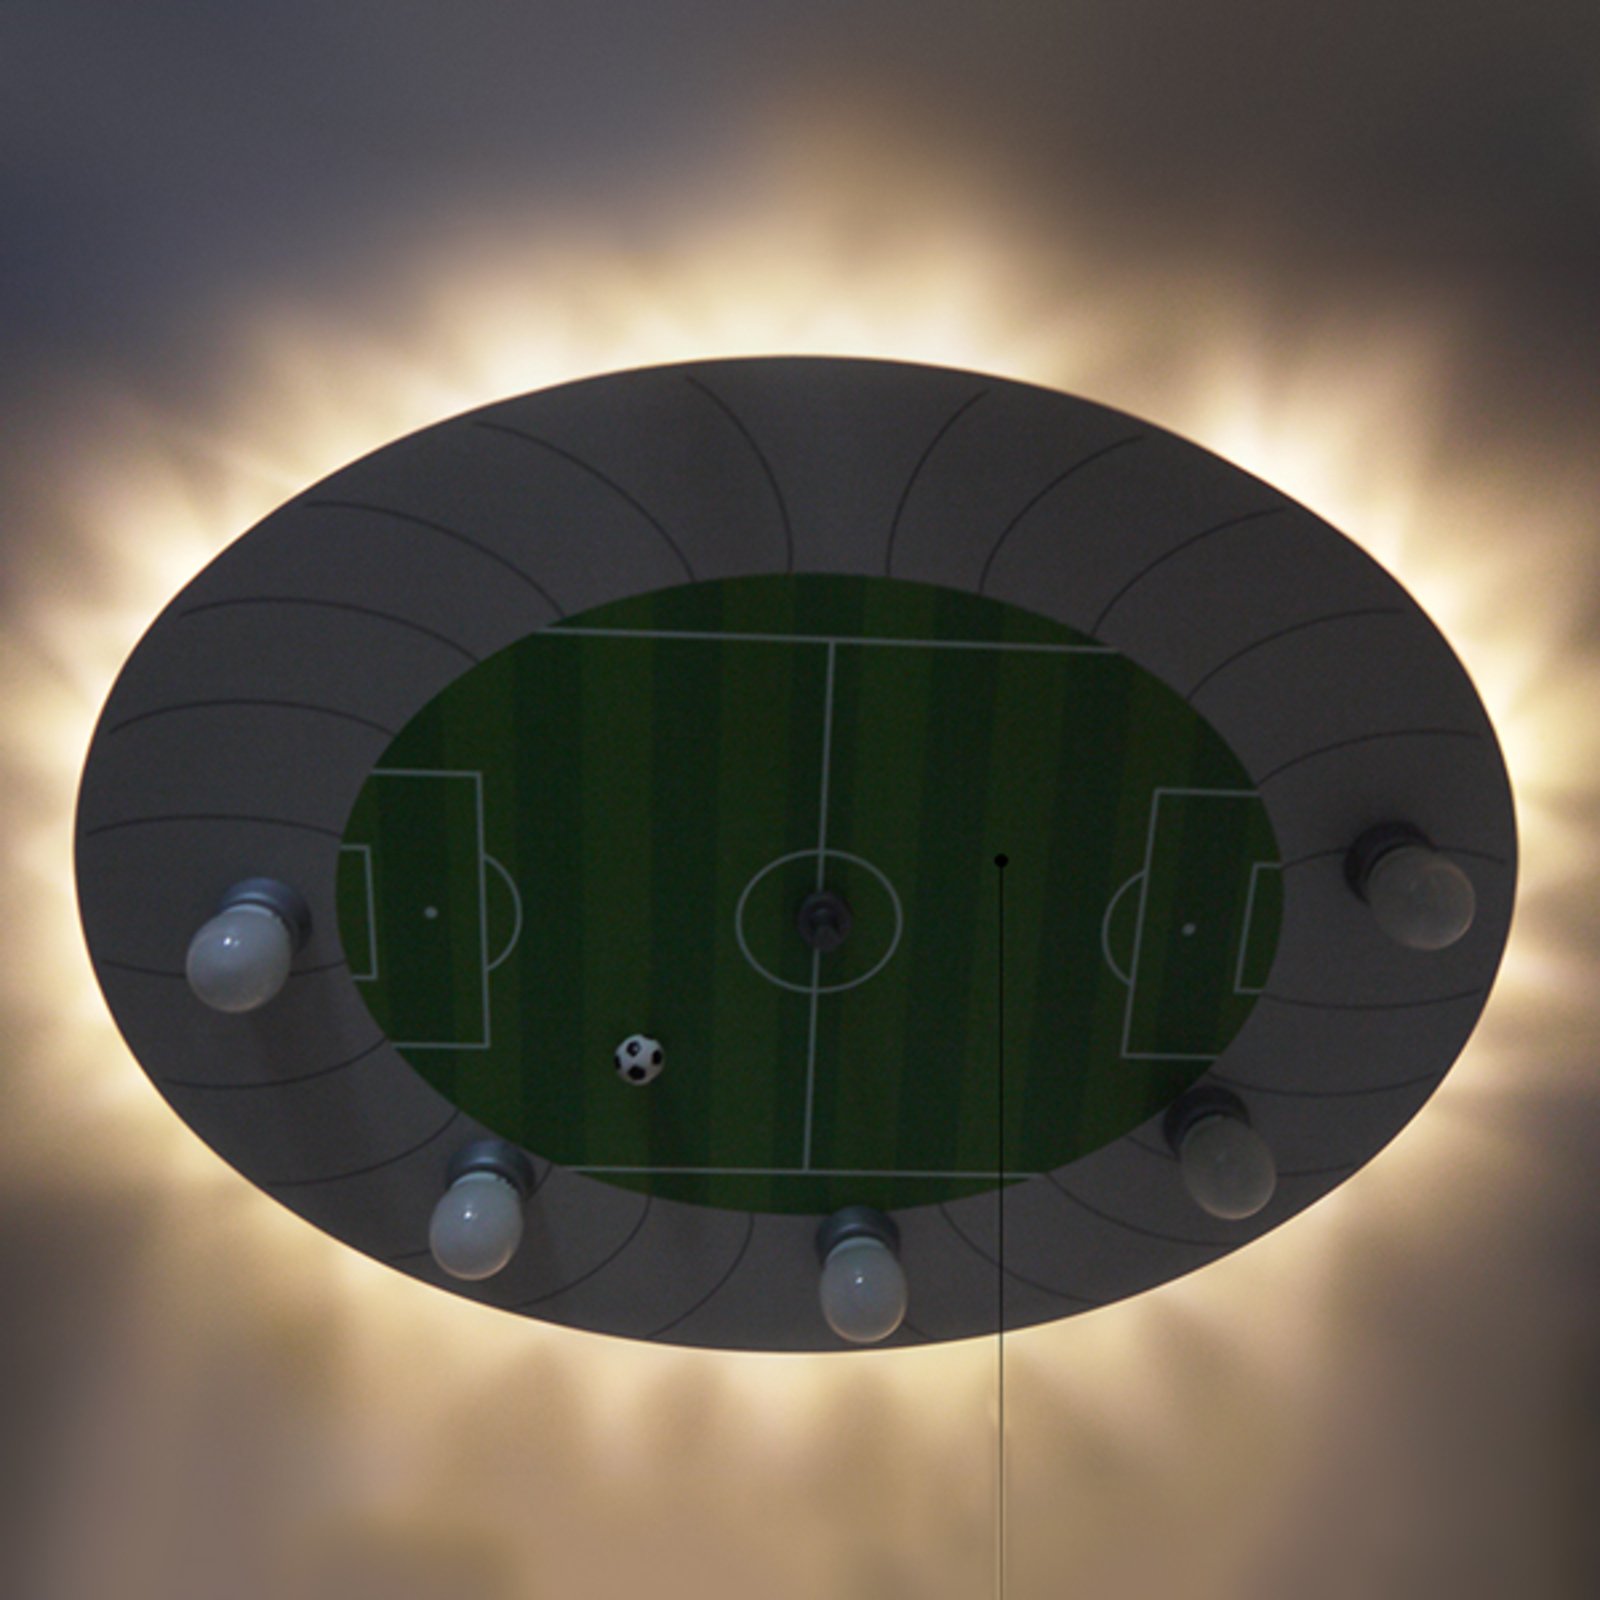 Stropno svjetlo za nogometni stadion s LED rasvjetnim točkama